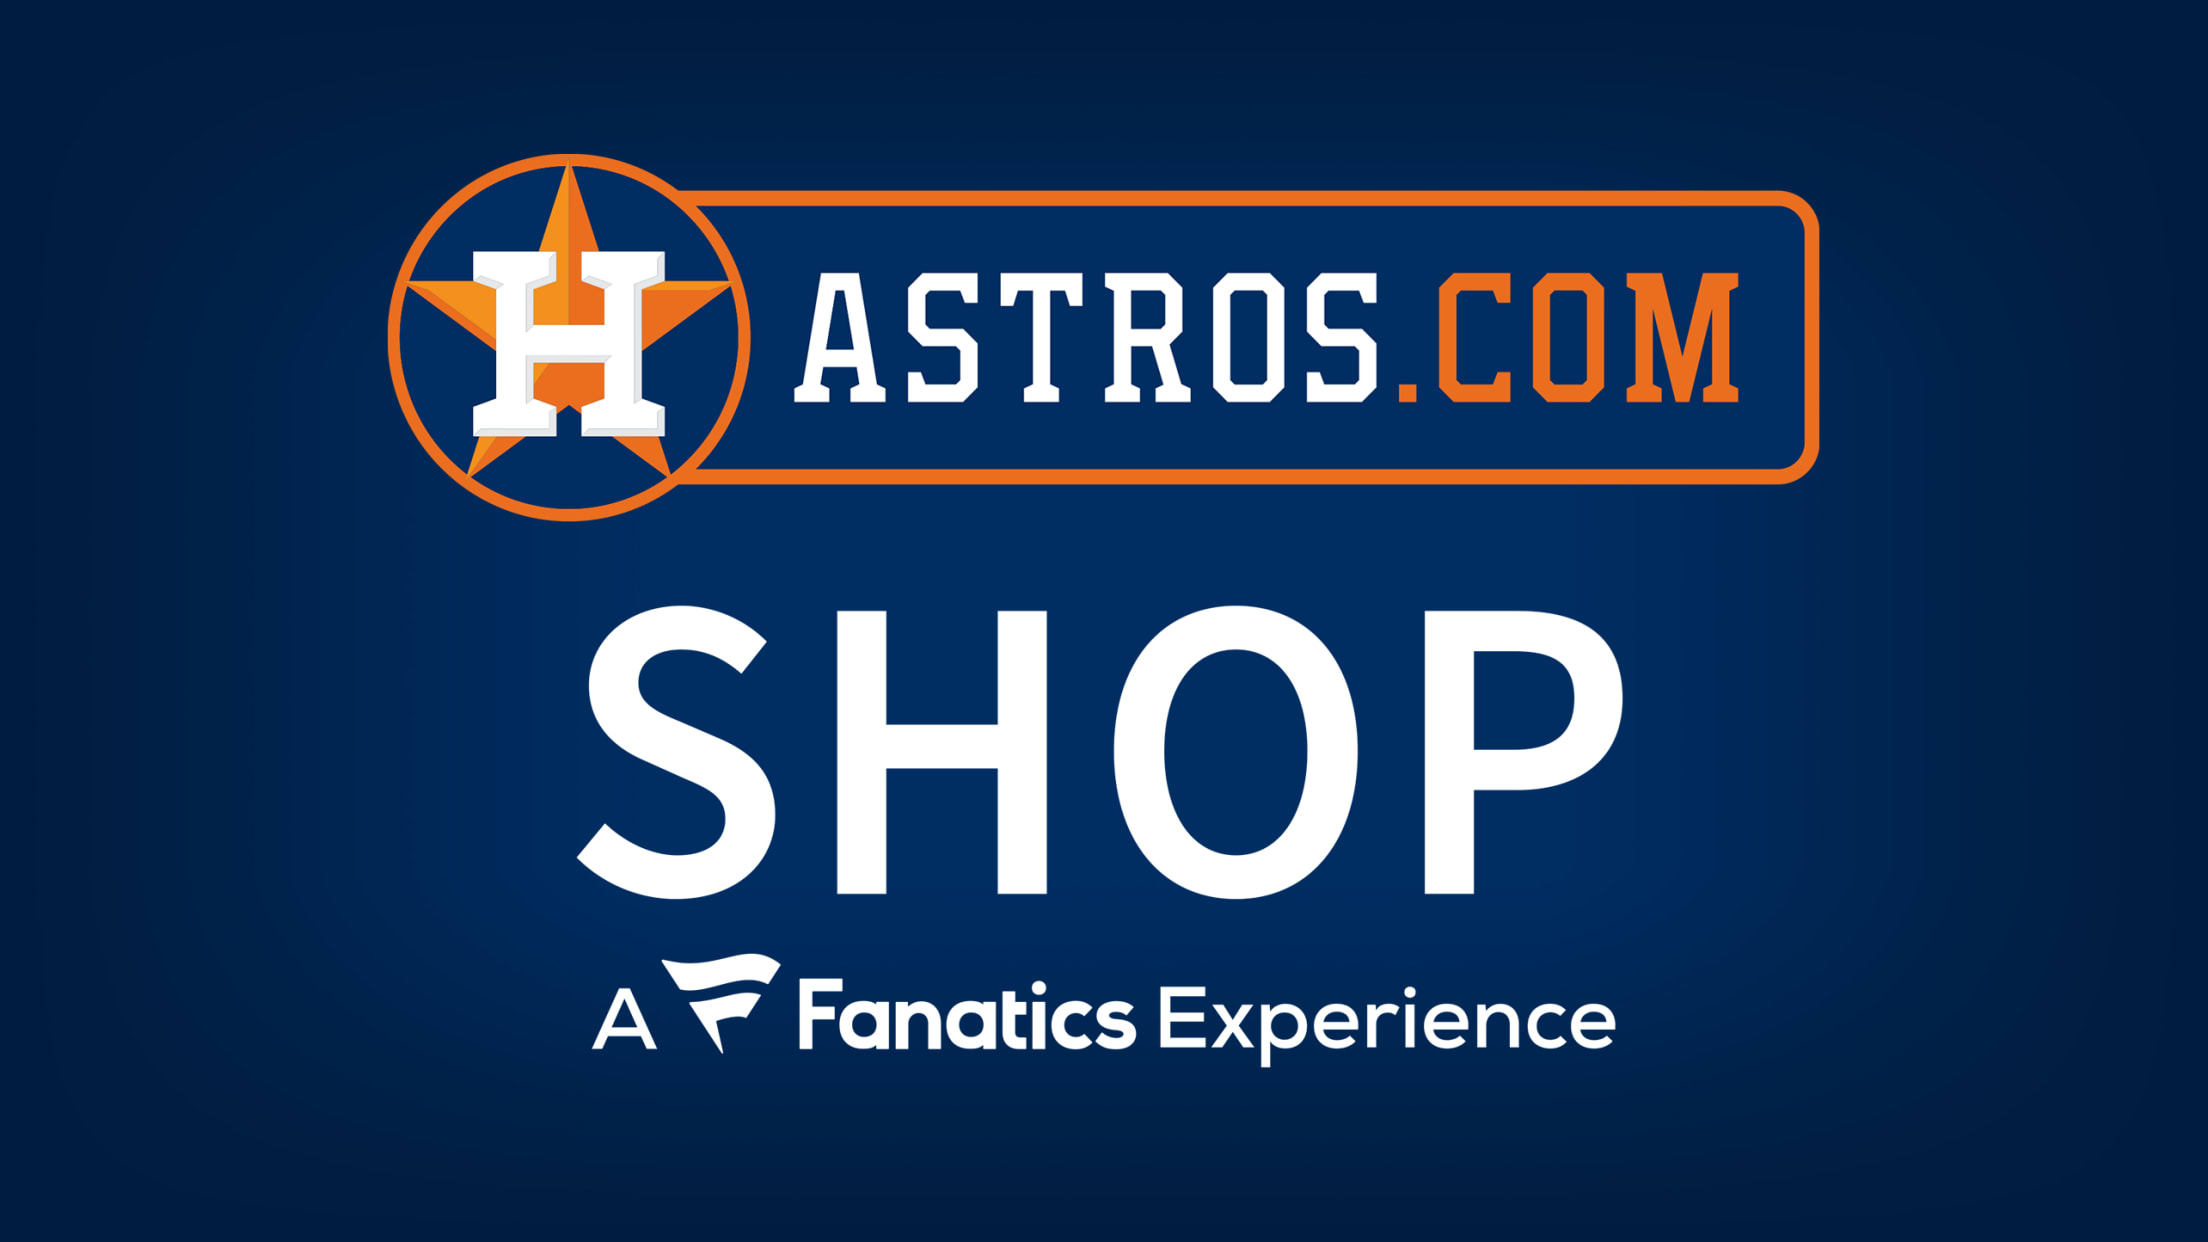 Official Houston Astros Website, MLB.com